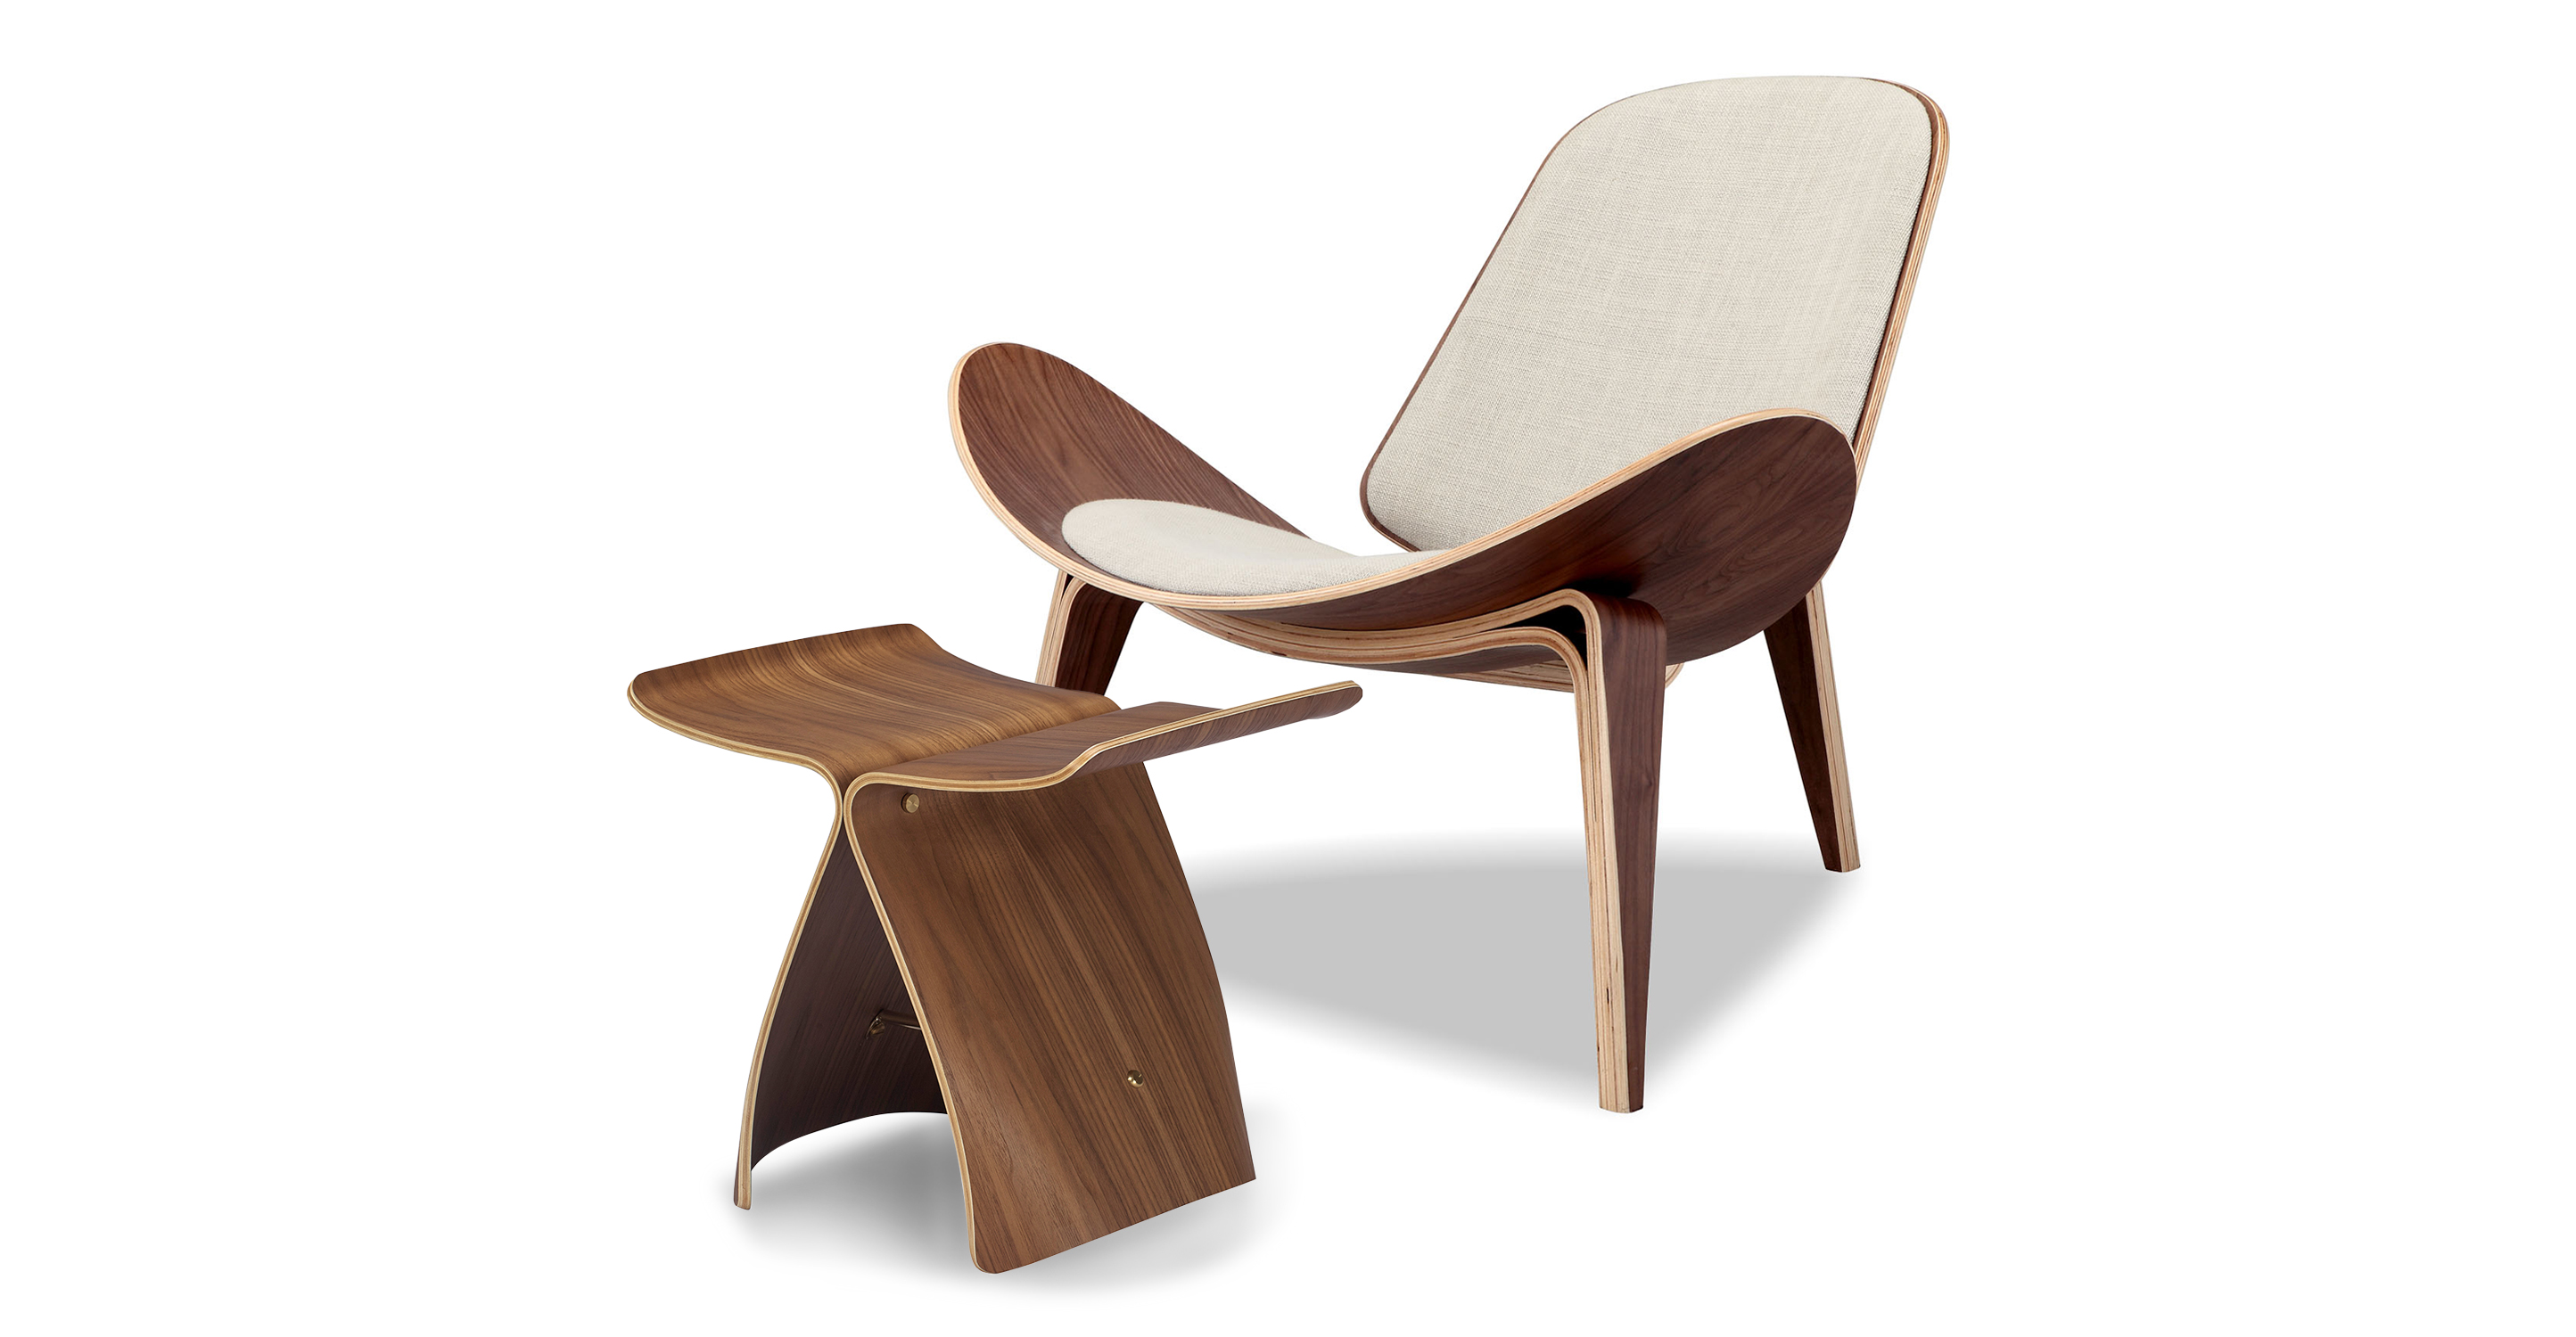 Tripod Fabric Chair 2-pc Set, Walnut/Urban Hemp